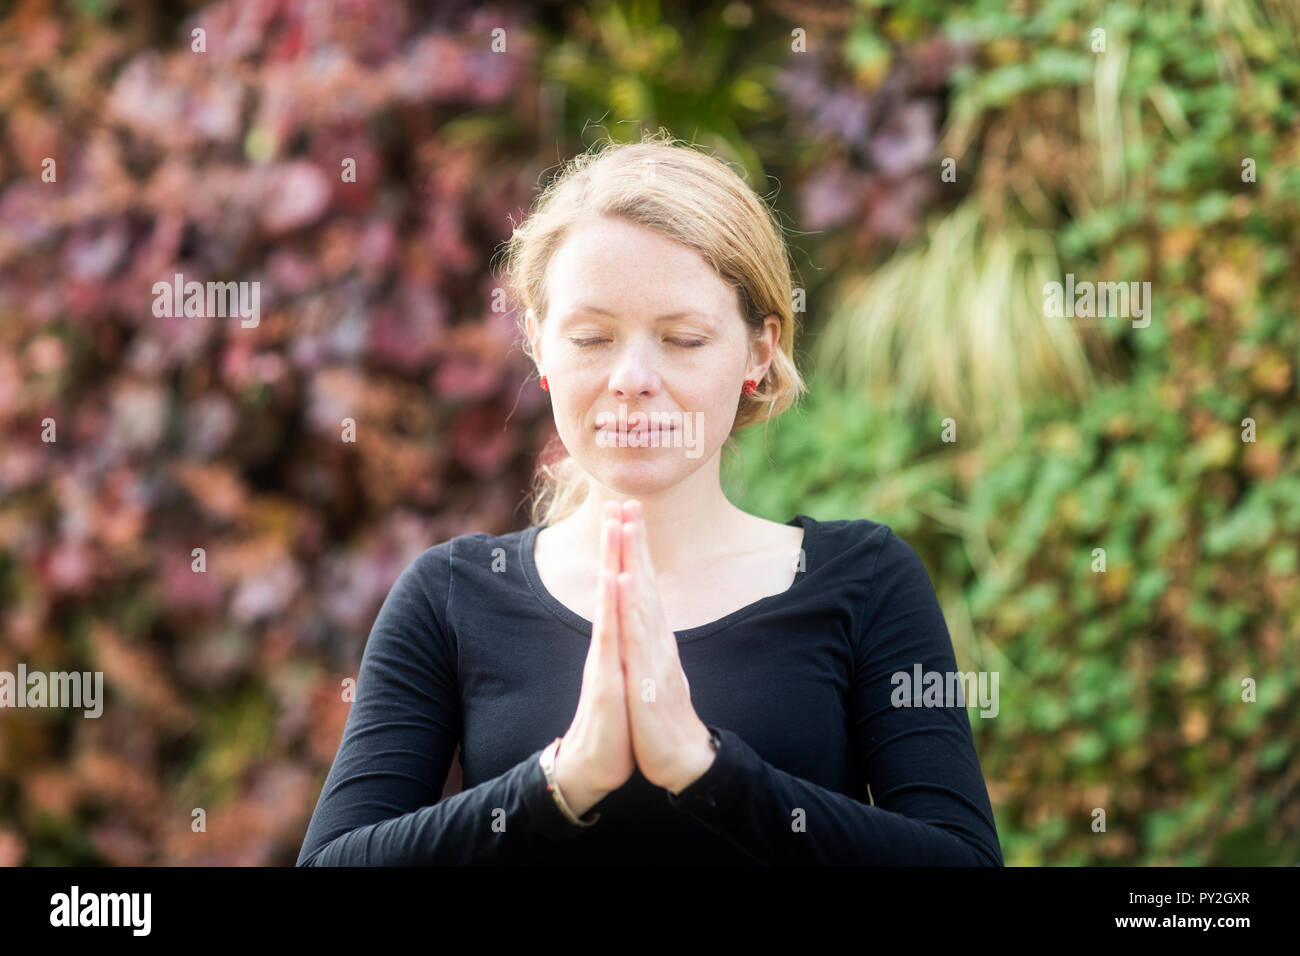 Portrait d'une femme debout dans le parc avec ses mains en position de prière Banque D'Images